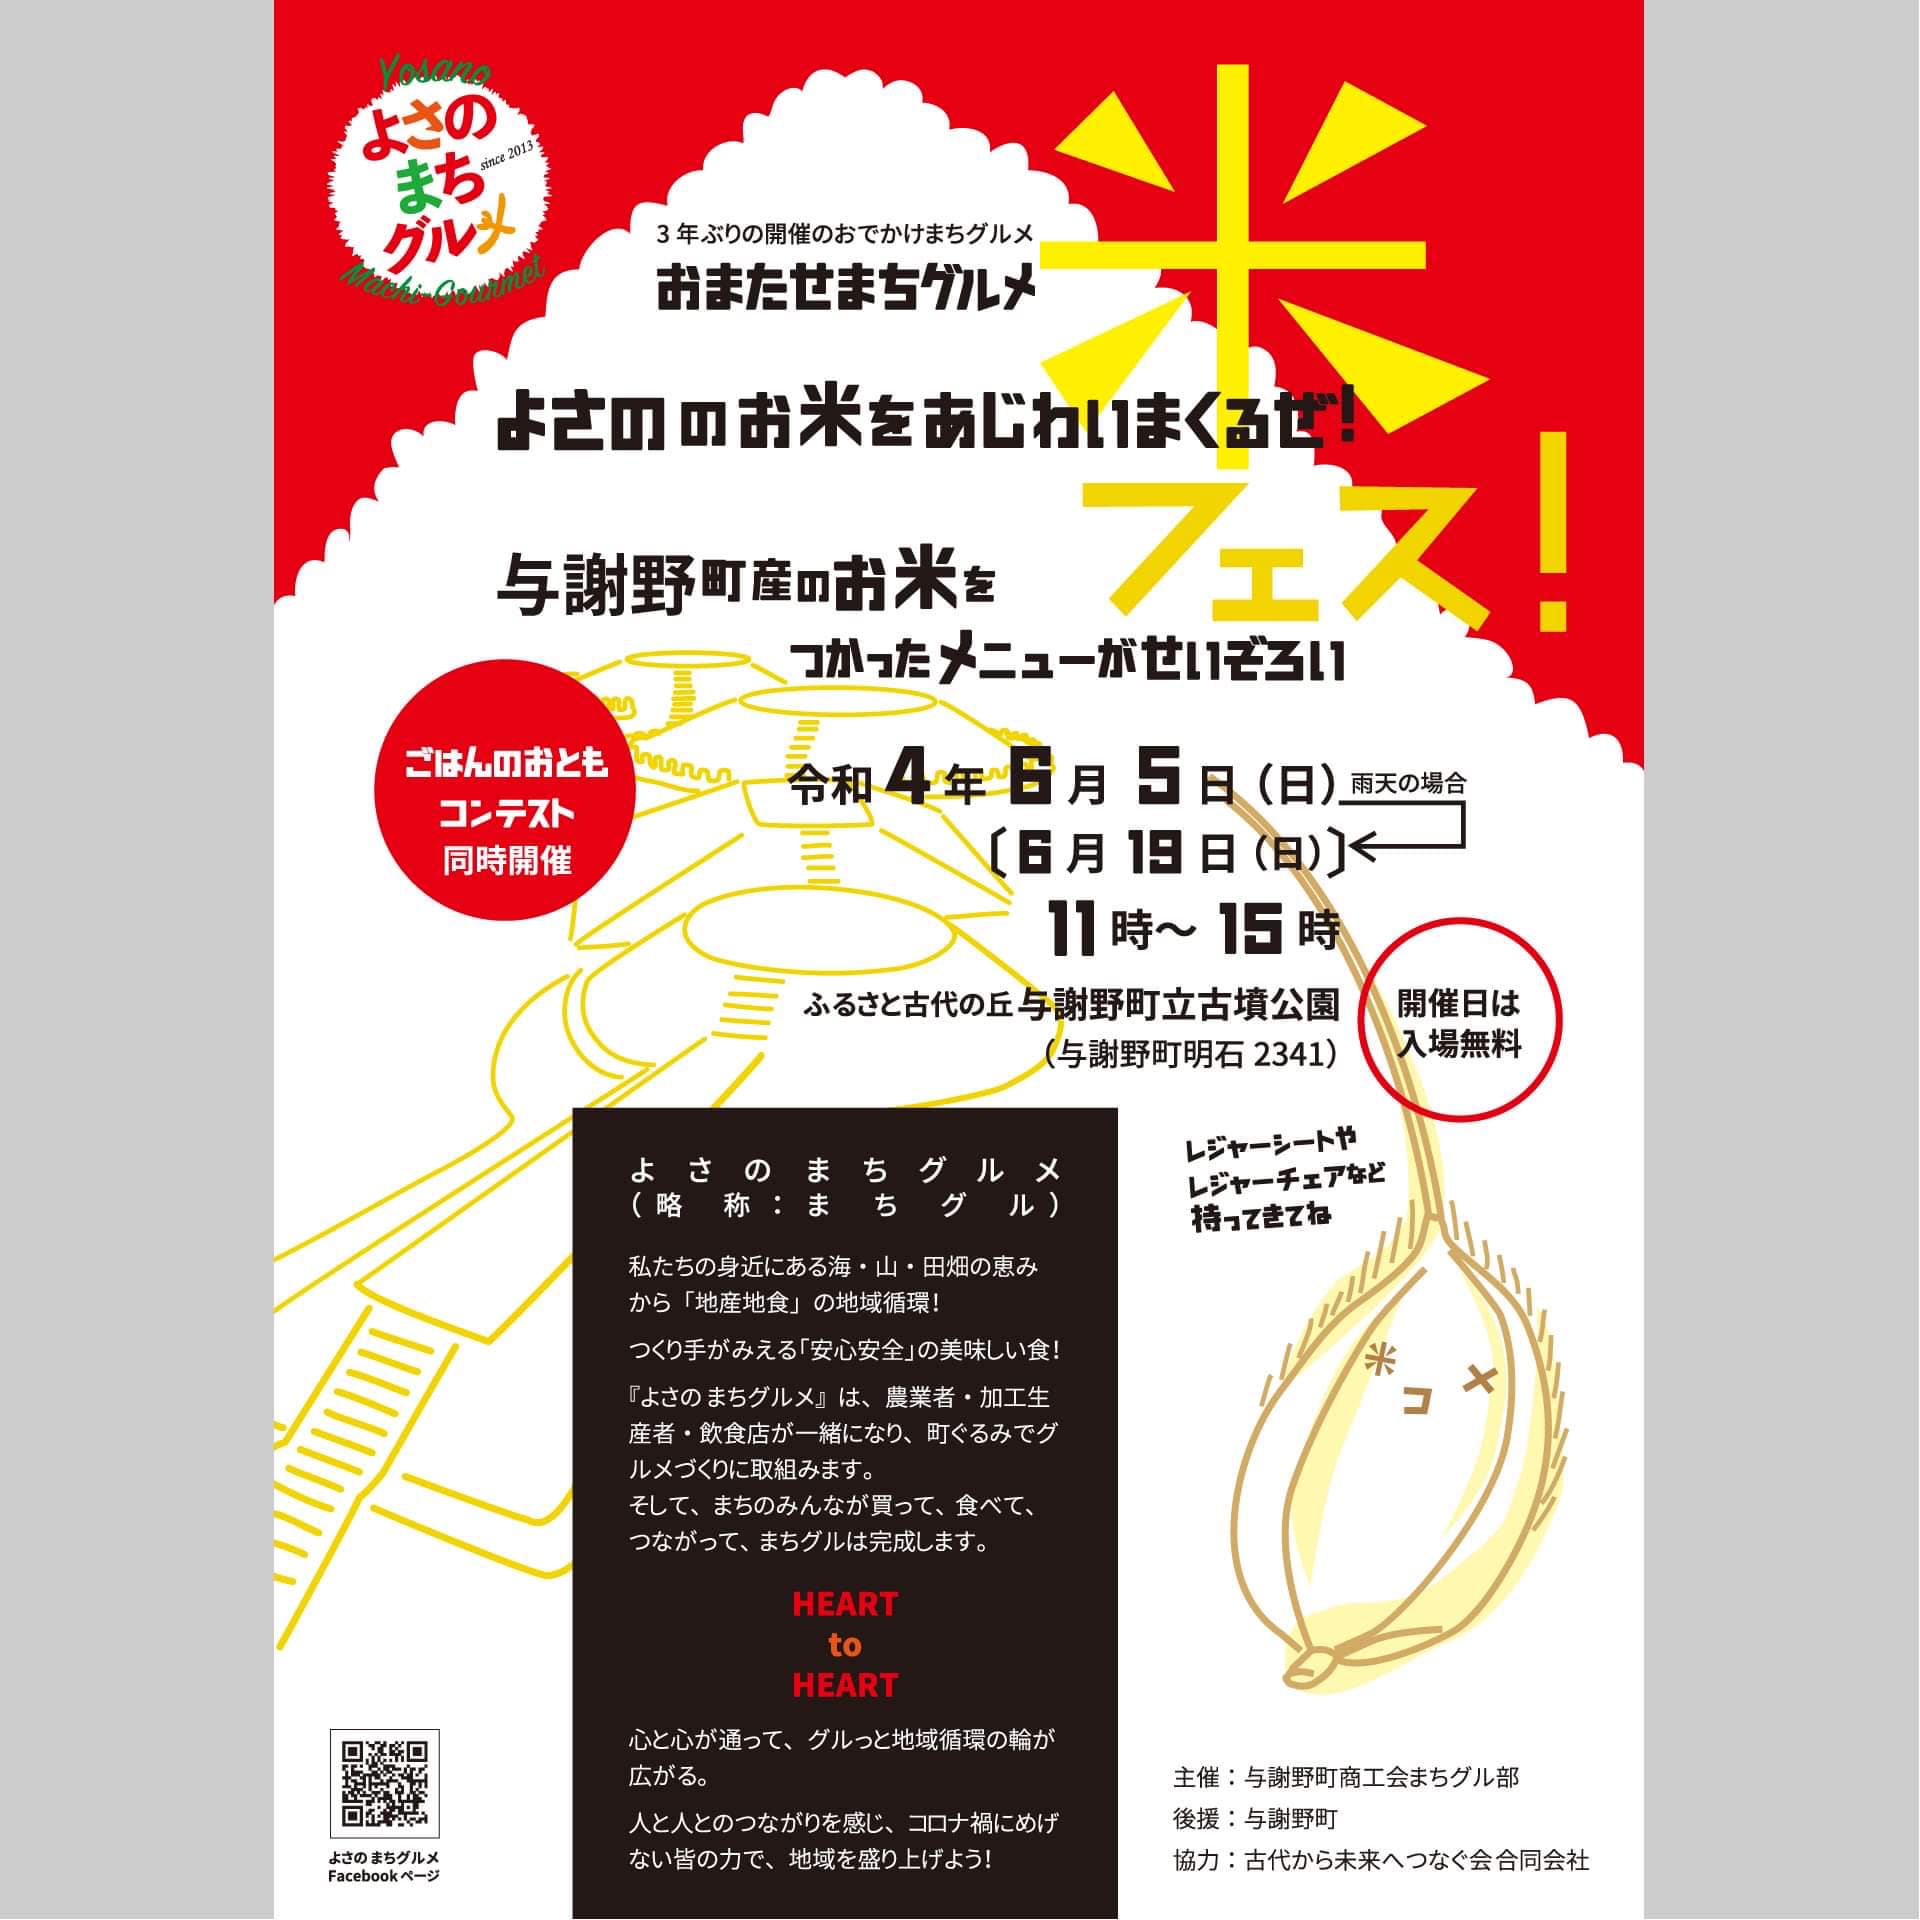 天橋立 観光 ニュース 与謝野町商工会 「おでかけまちグルメ」開催